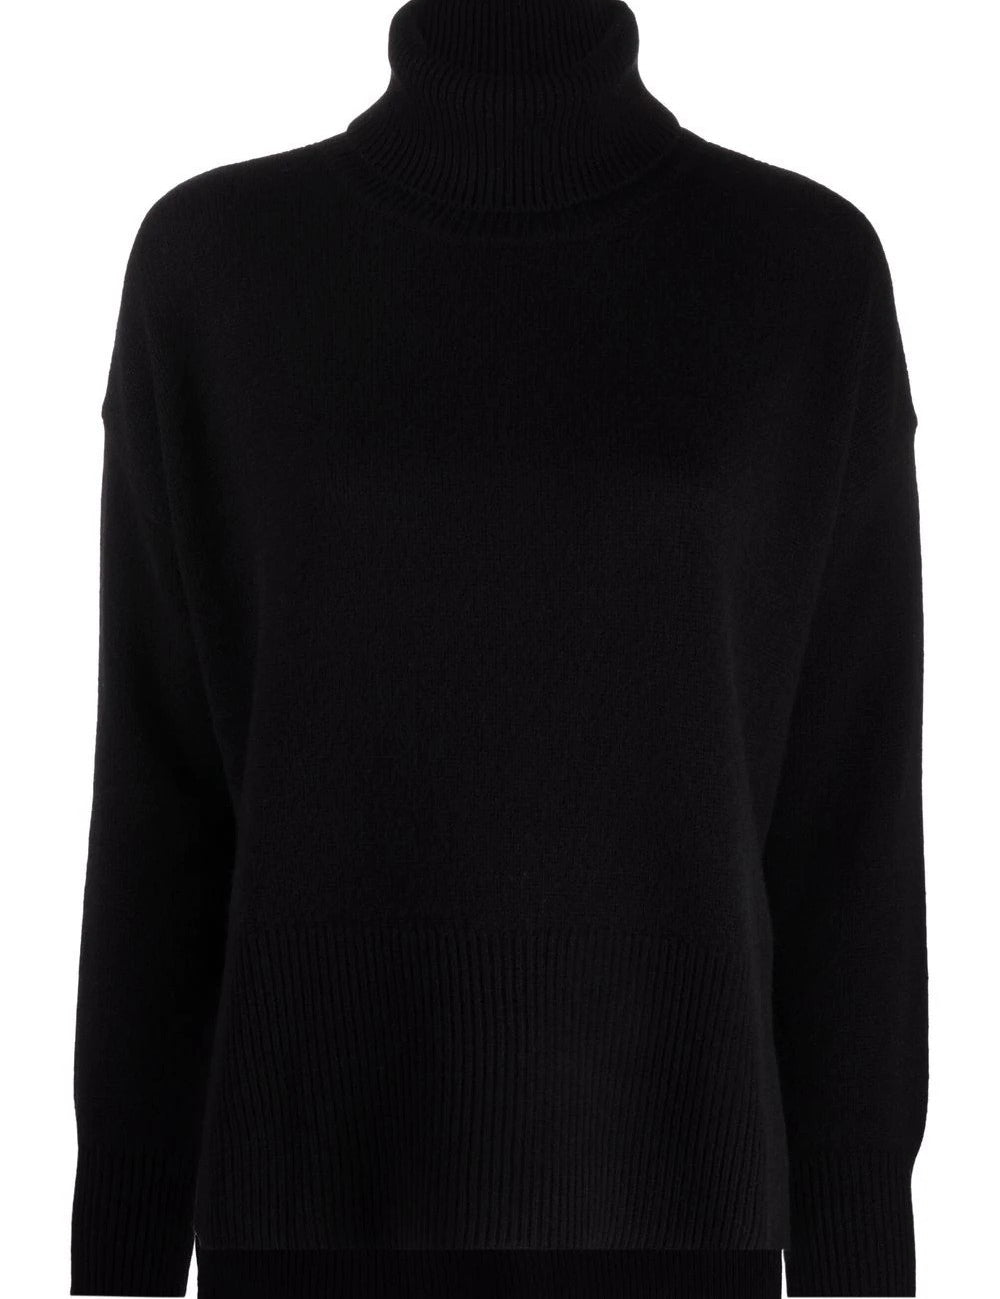 high-neck-sweater_58c59a01-87bd-48c1-b08a-0628c59a30bd.jpg